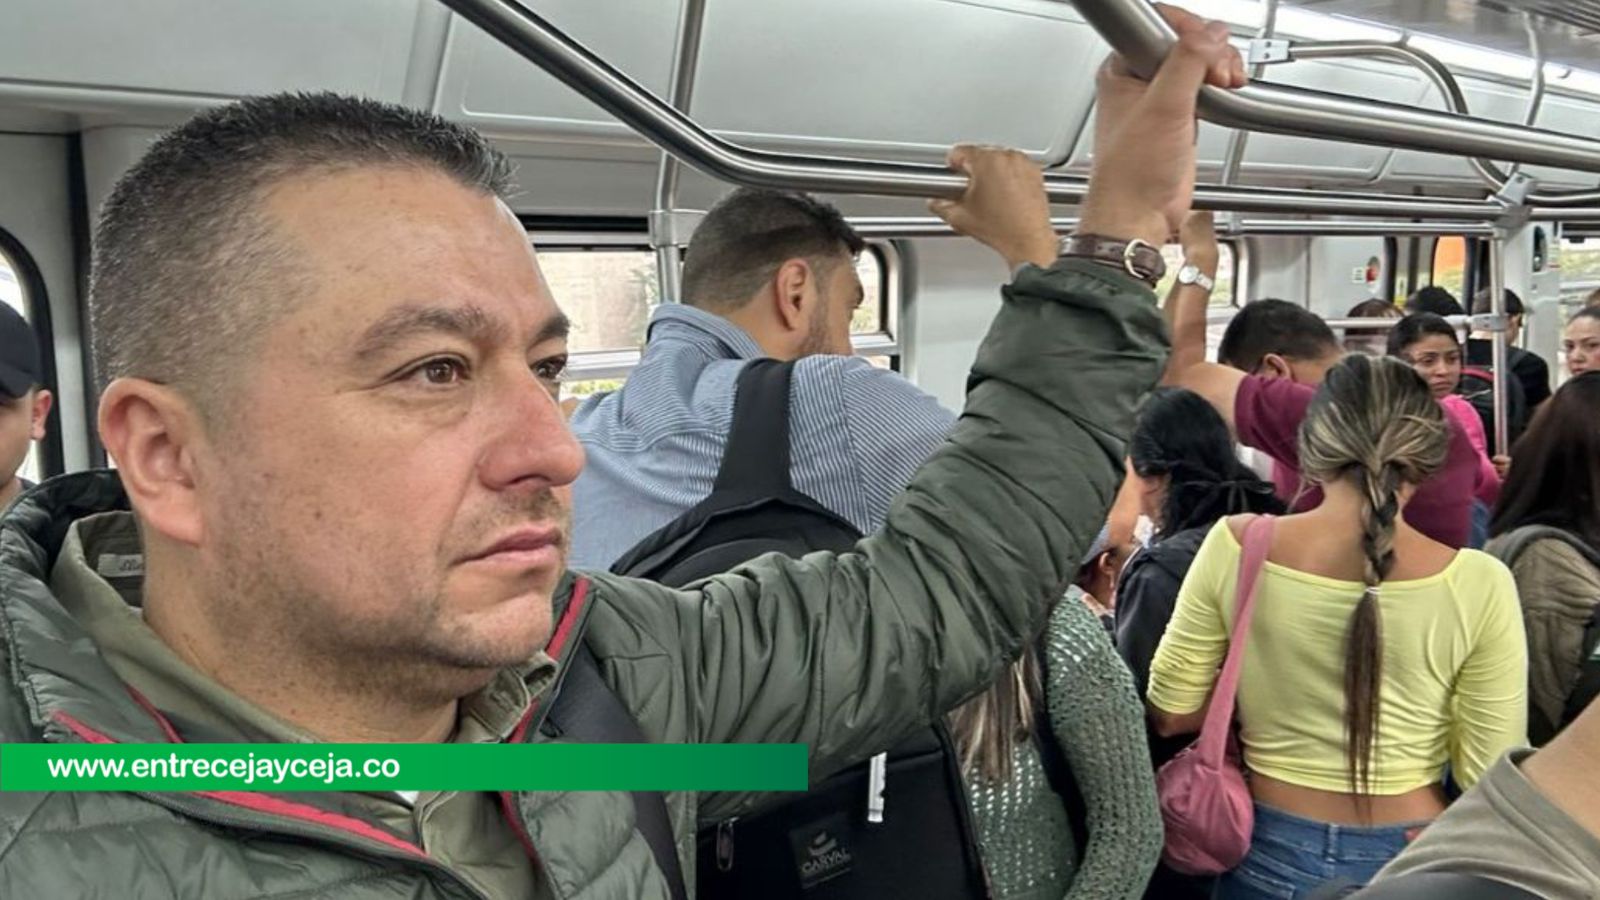 En transporte público, así fue visto el ex alcalde Gildardo Hurtado